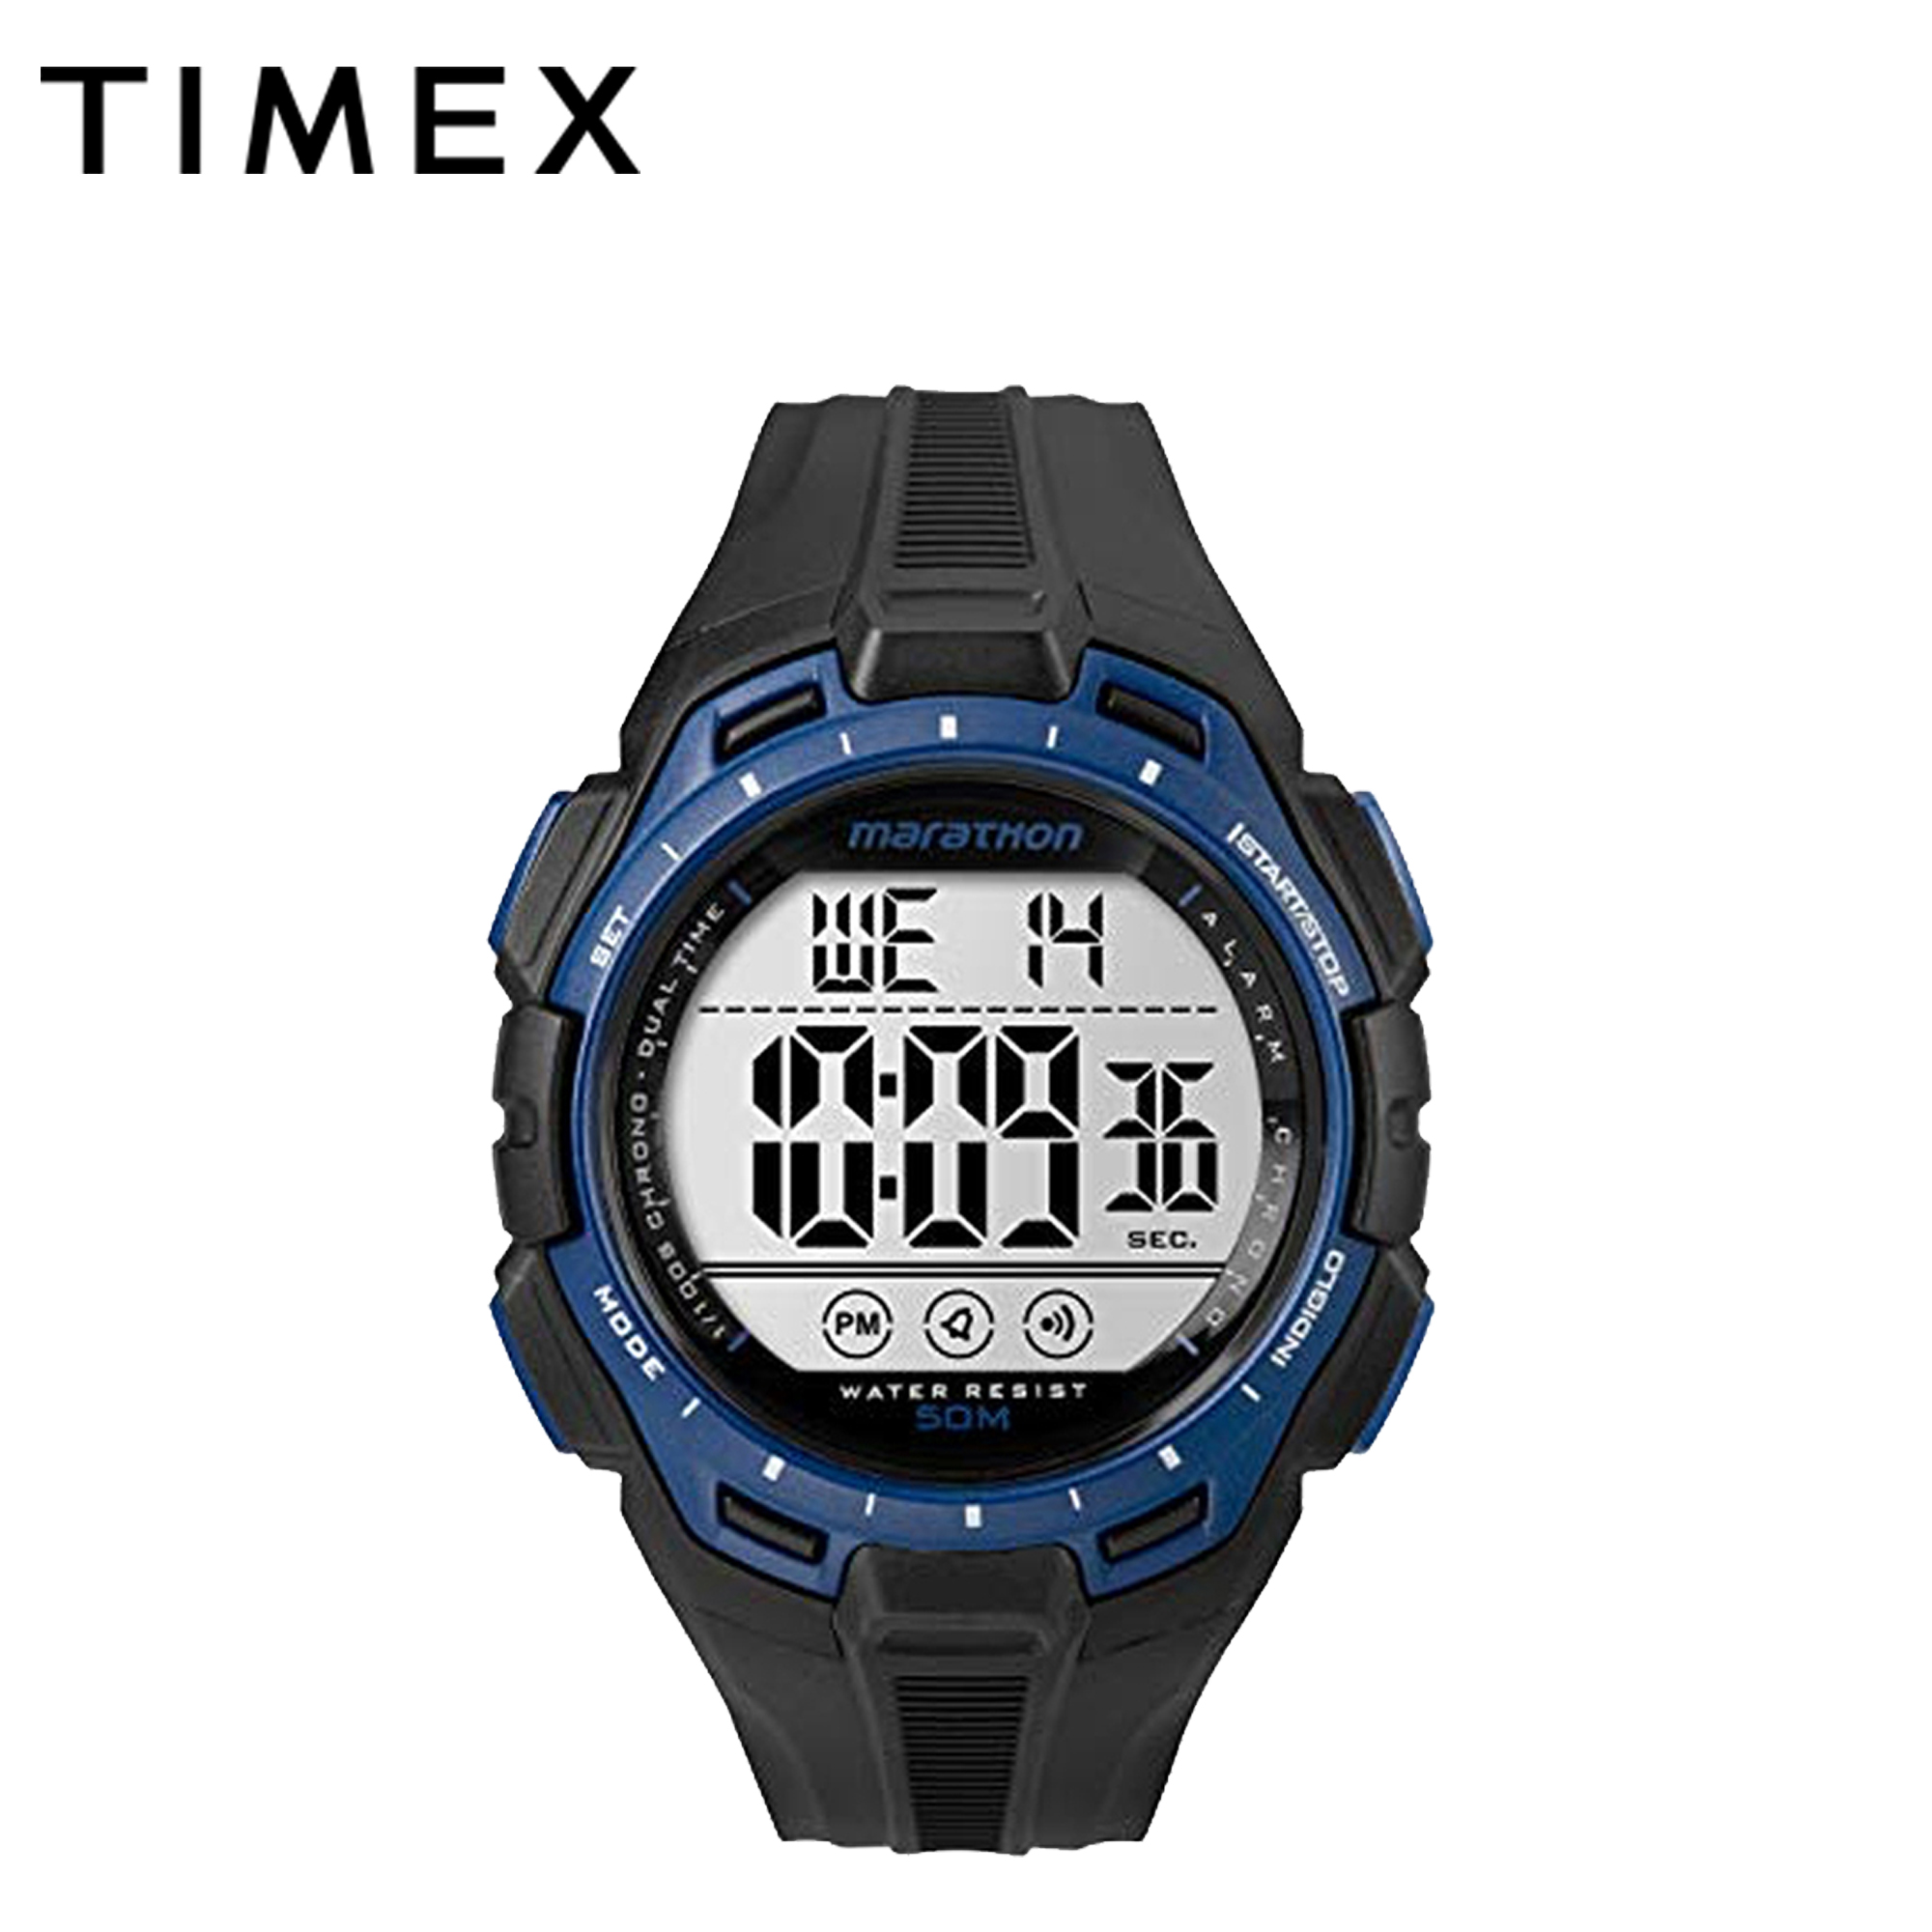 timex men's marathon watch